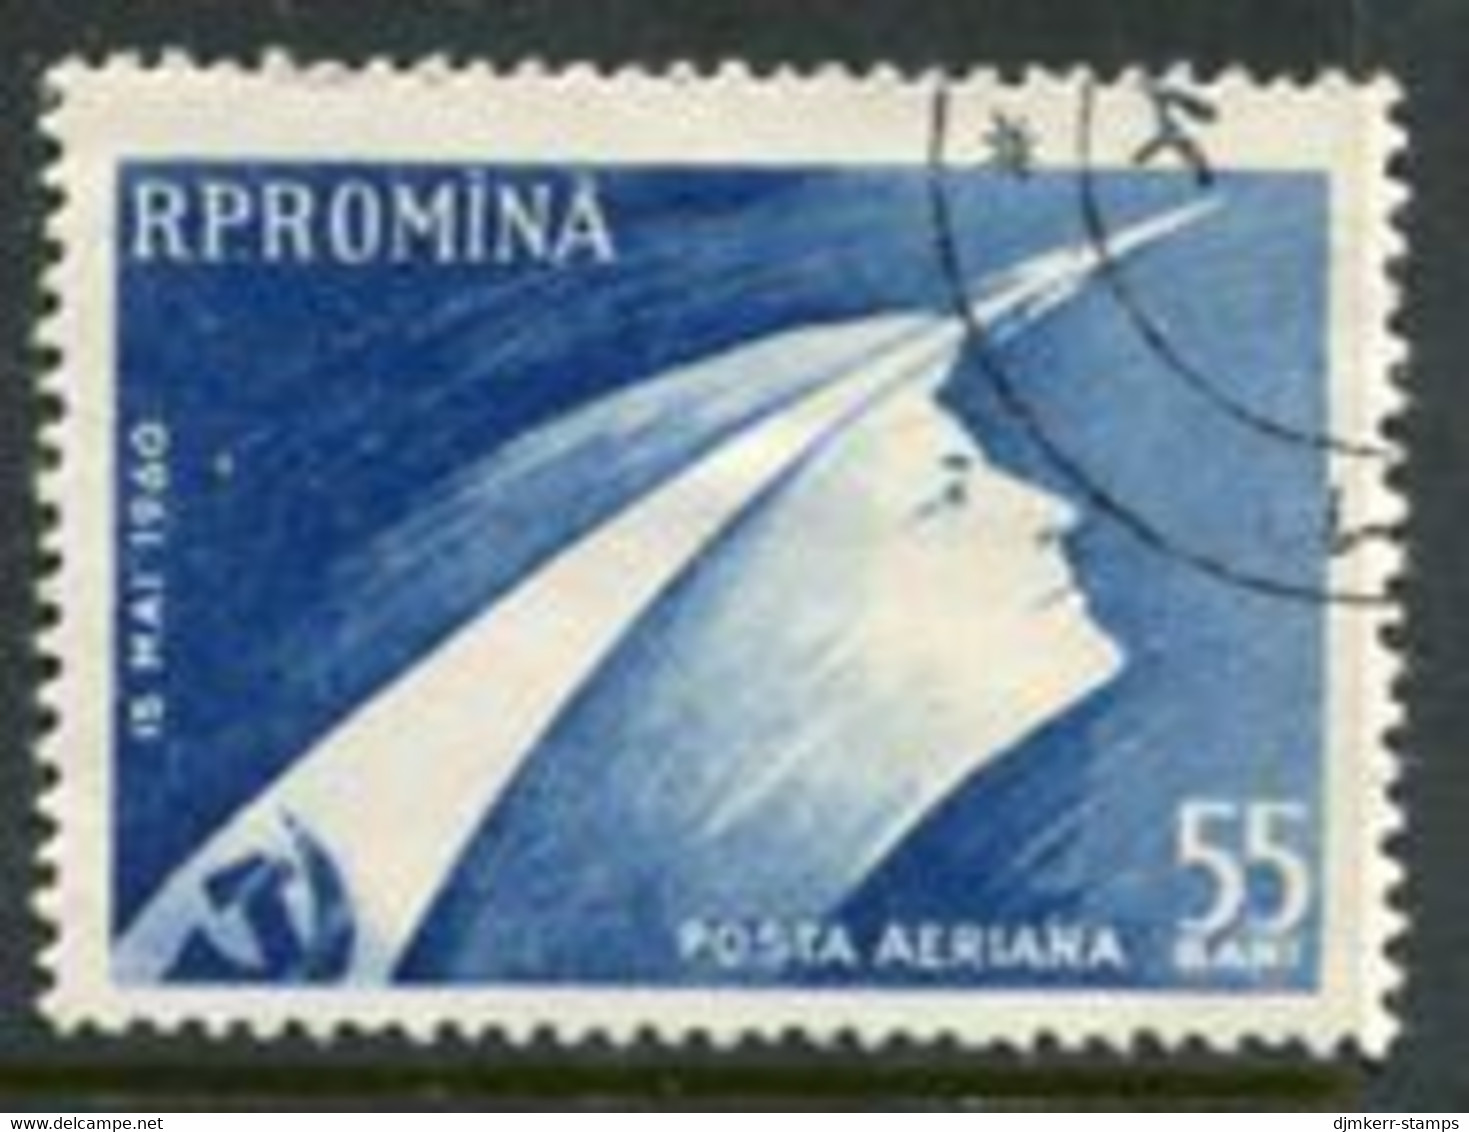 ROMANIA 1960 Launch Of Vostok Spacecraft Used.  Michel 1899 - Gebraucht